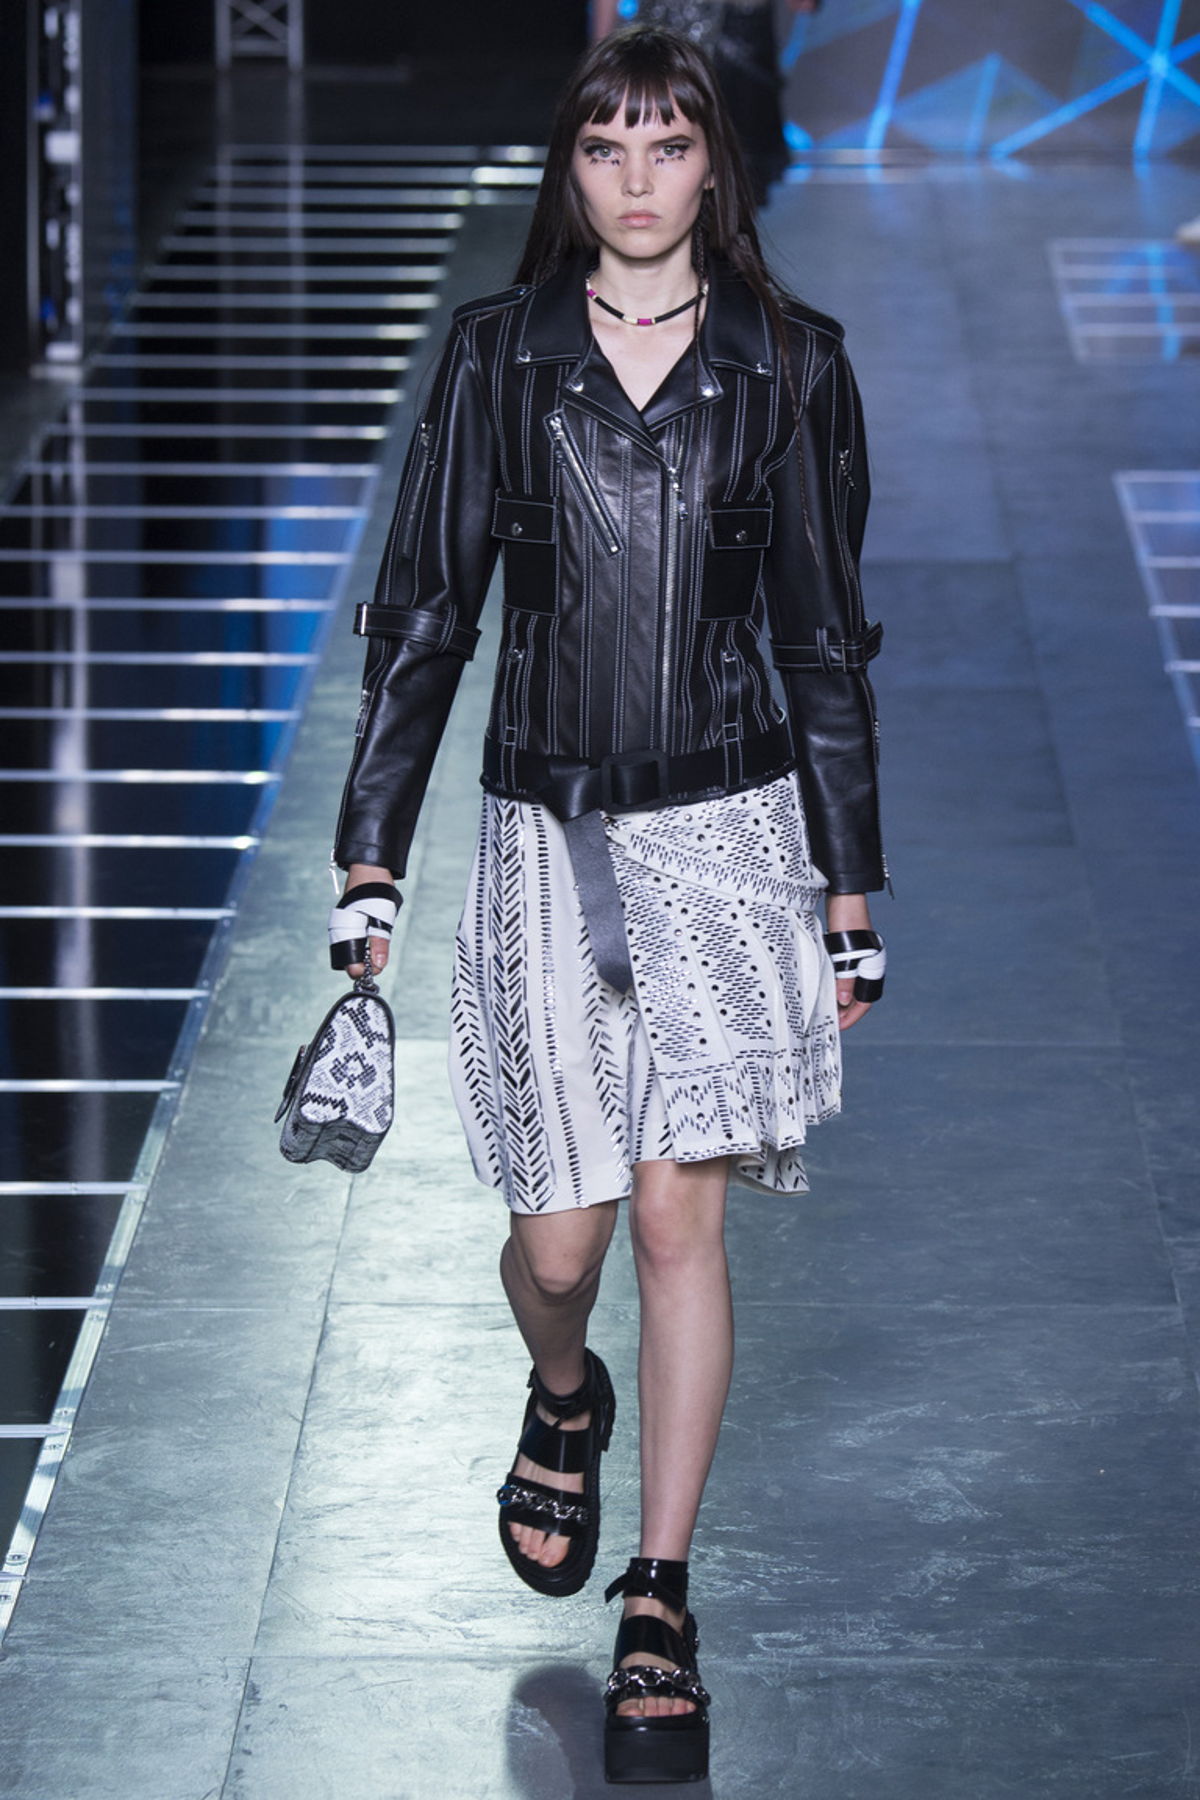 Кожаная черная куртка сс светлой летней юбкой - фотоновинка из коллекции Louis Vuitton.